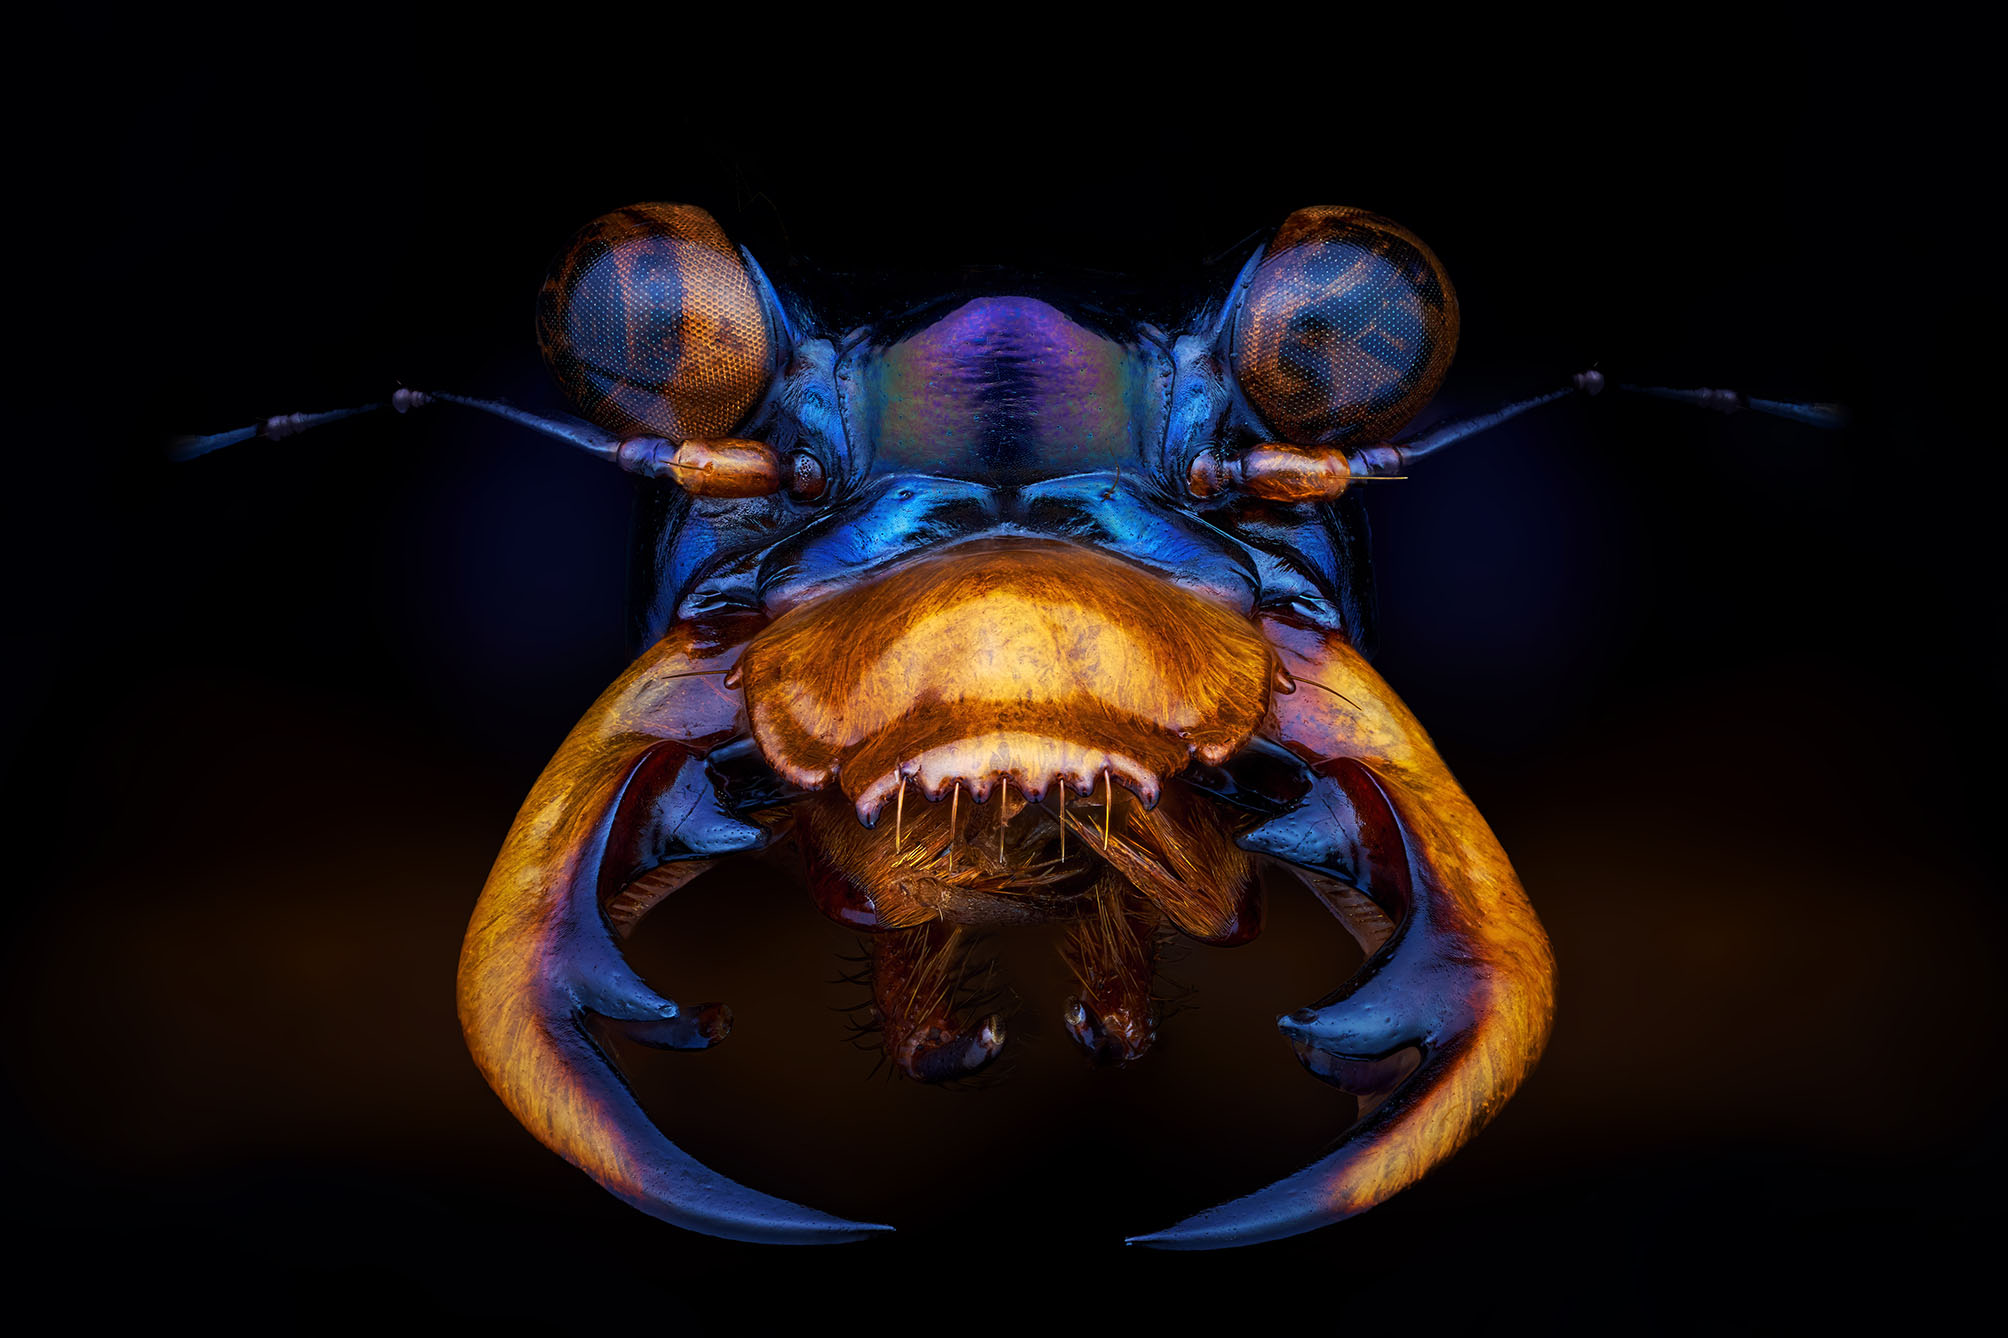 Un scarabée tigre aux couleurs chatoyantes